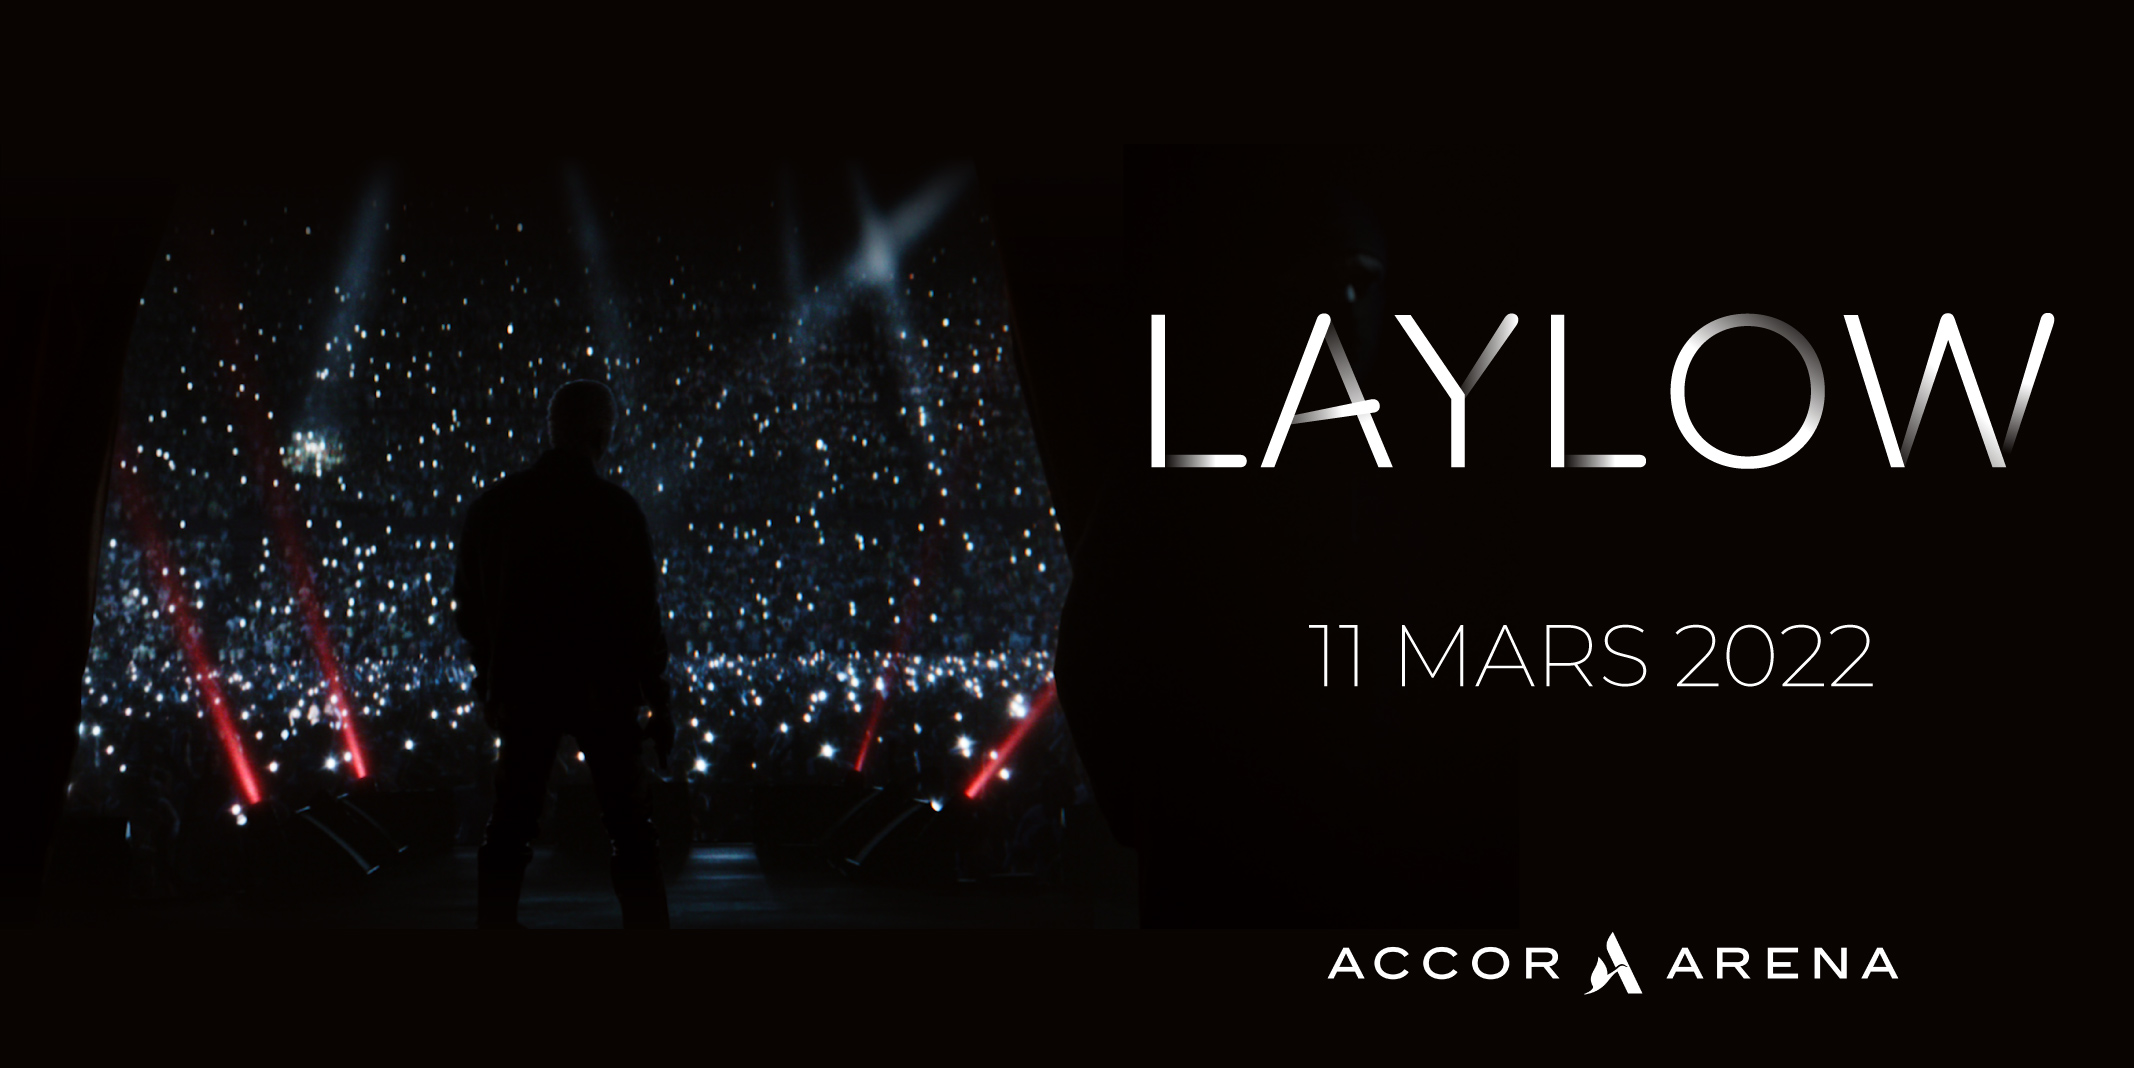 Accor Arena on Twitter: "[ANNONCE 📢] Laylow en concert à l'Accor Arena le  vendredi 11 mars 2022, c'est réel !! 🔥 Après le succès de son album  "L'Étrange Histoire de Mr. Anderson",